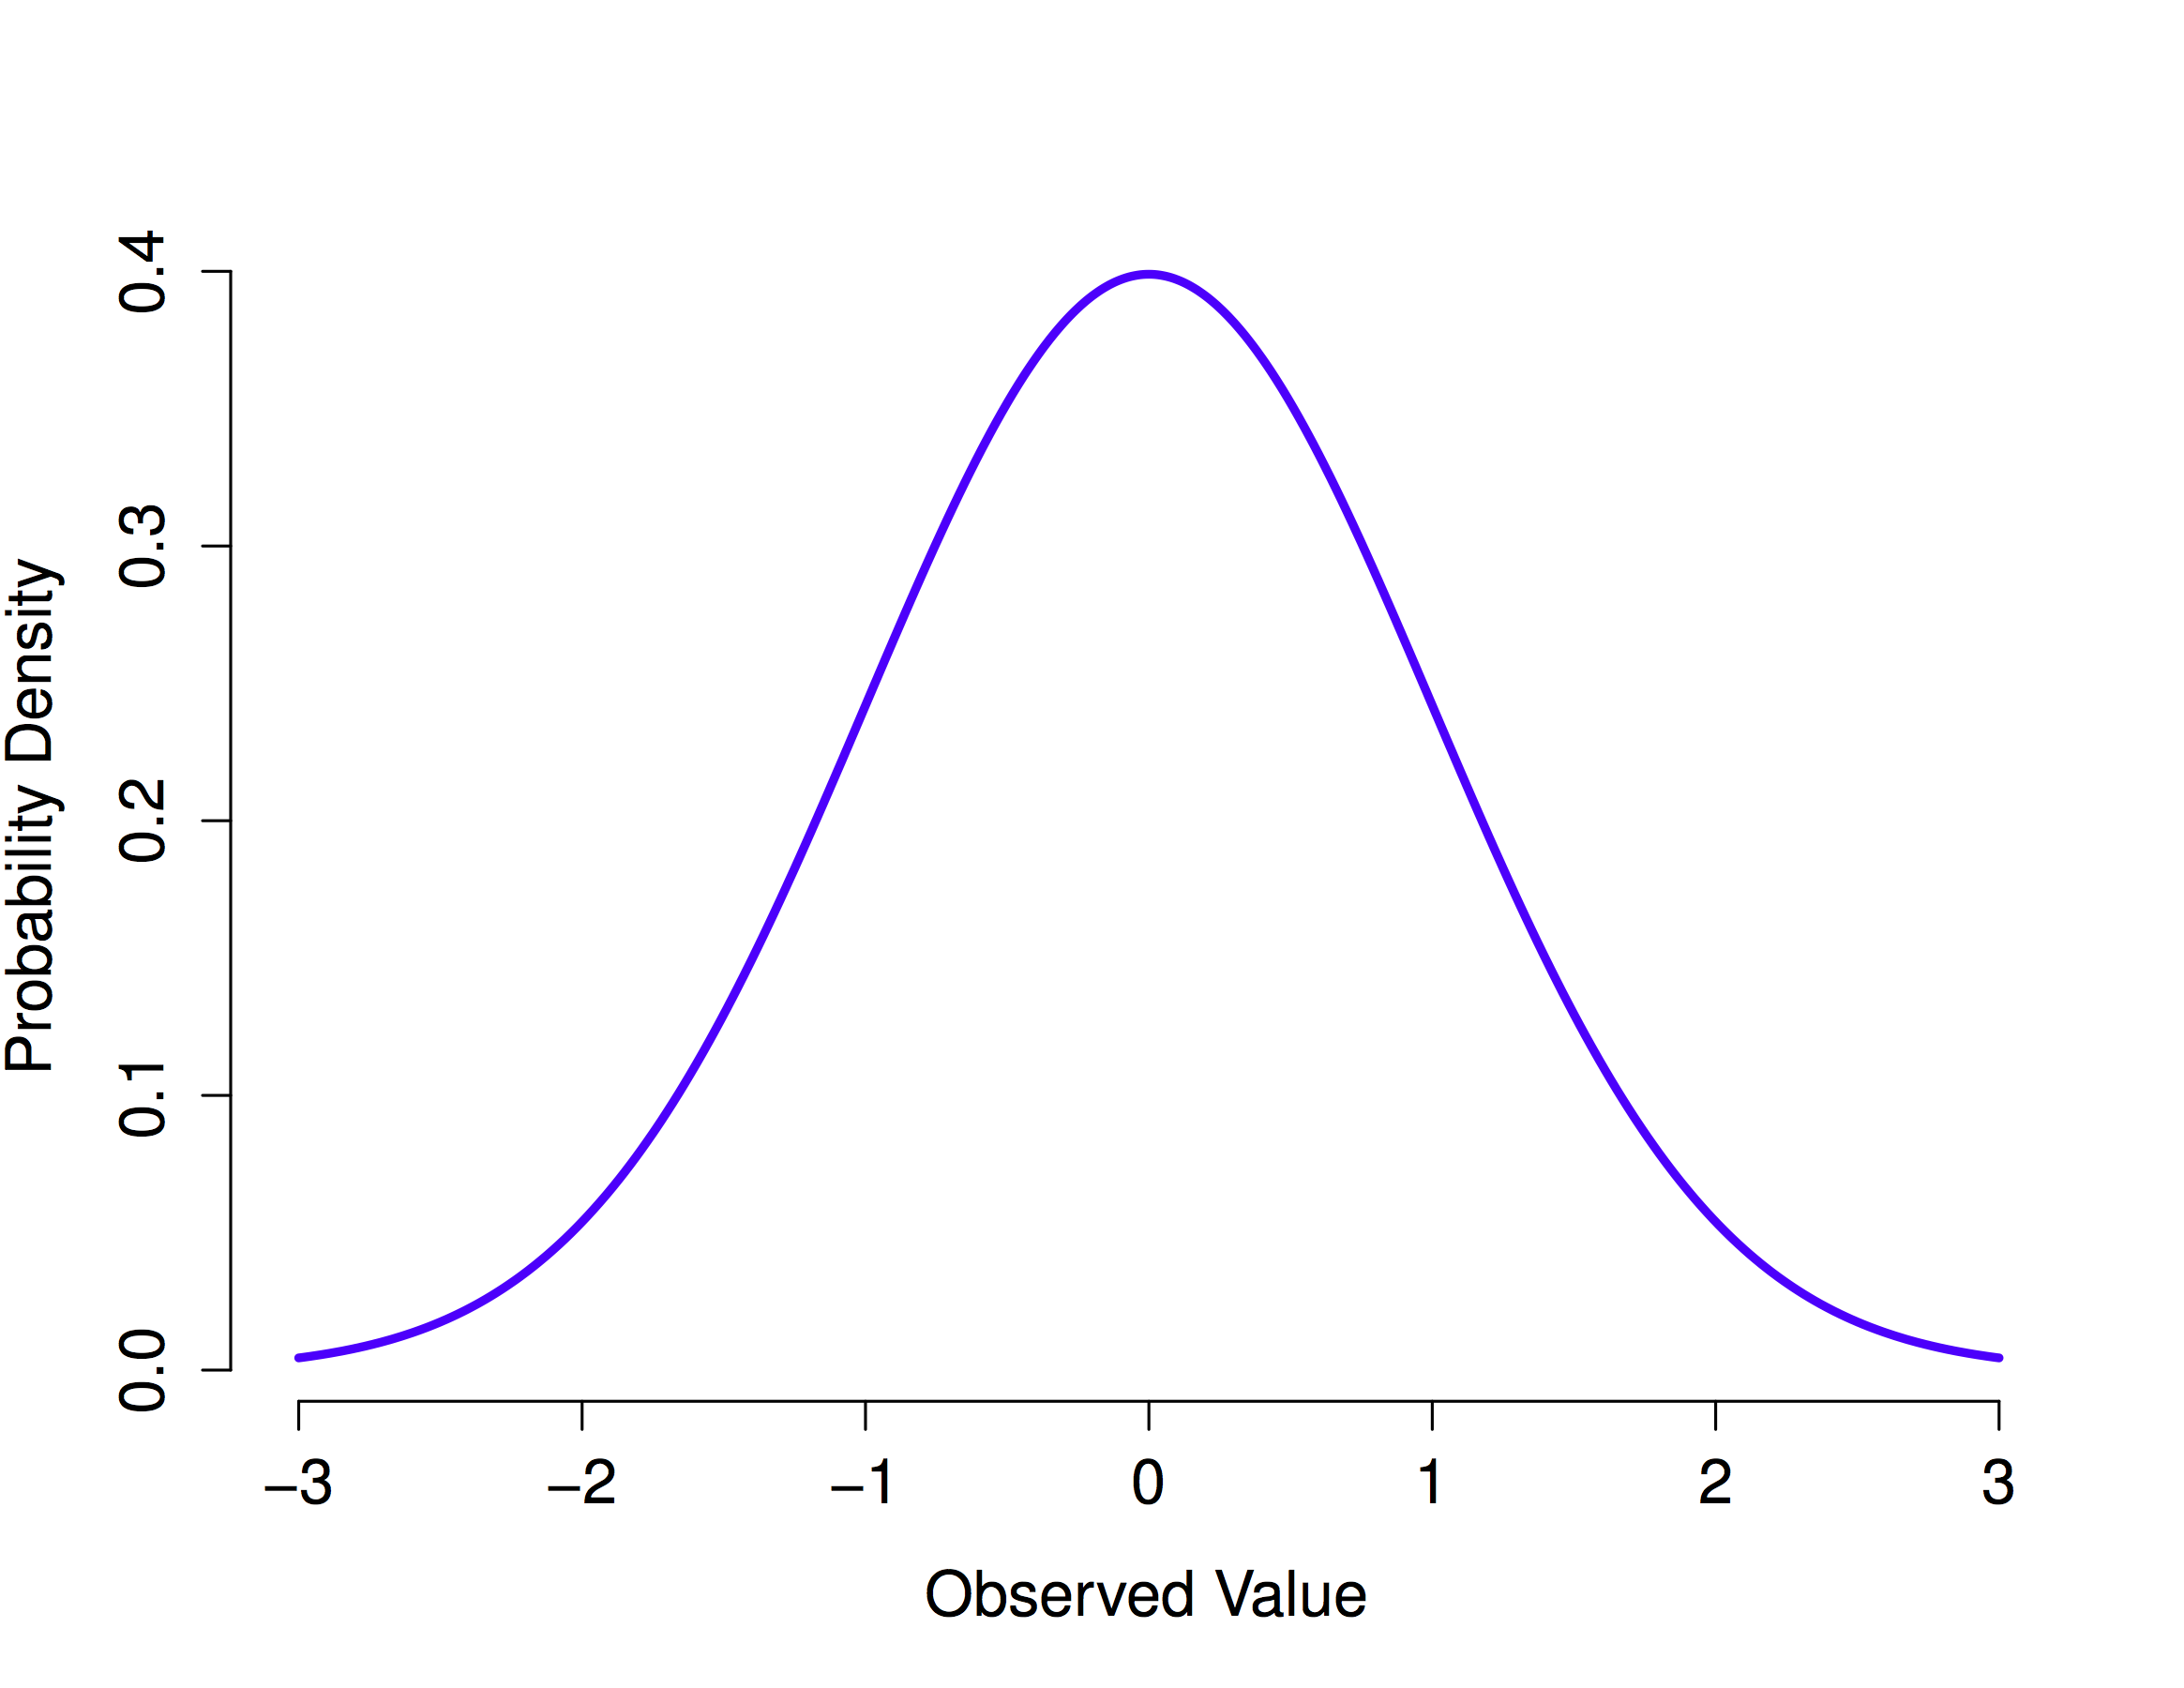 La distribución normal con media = 0 y desviación estándar = 1.